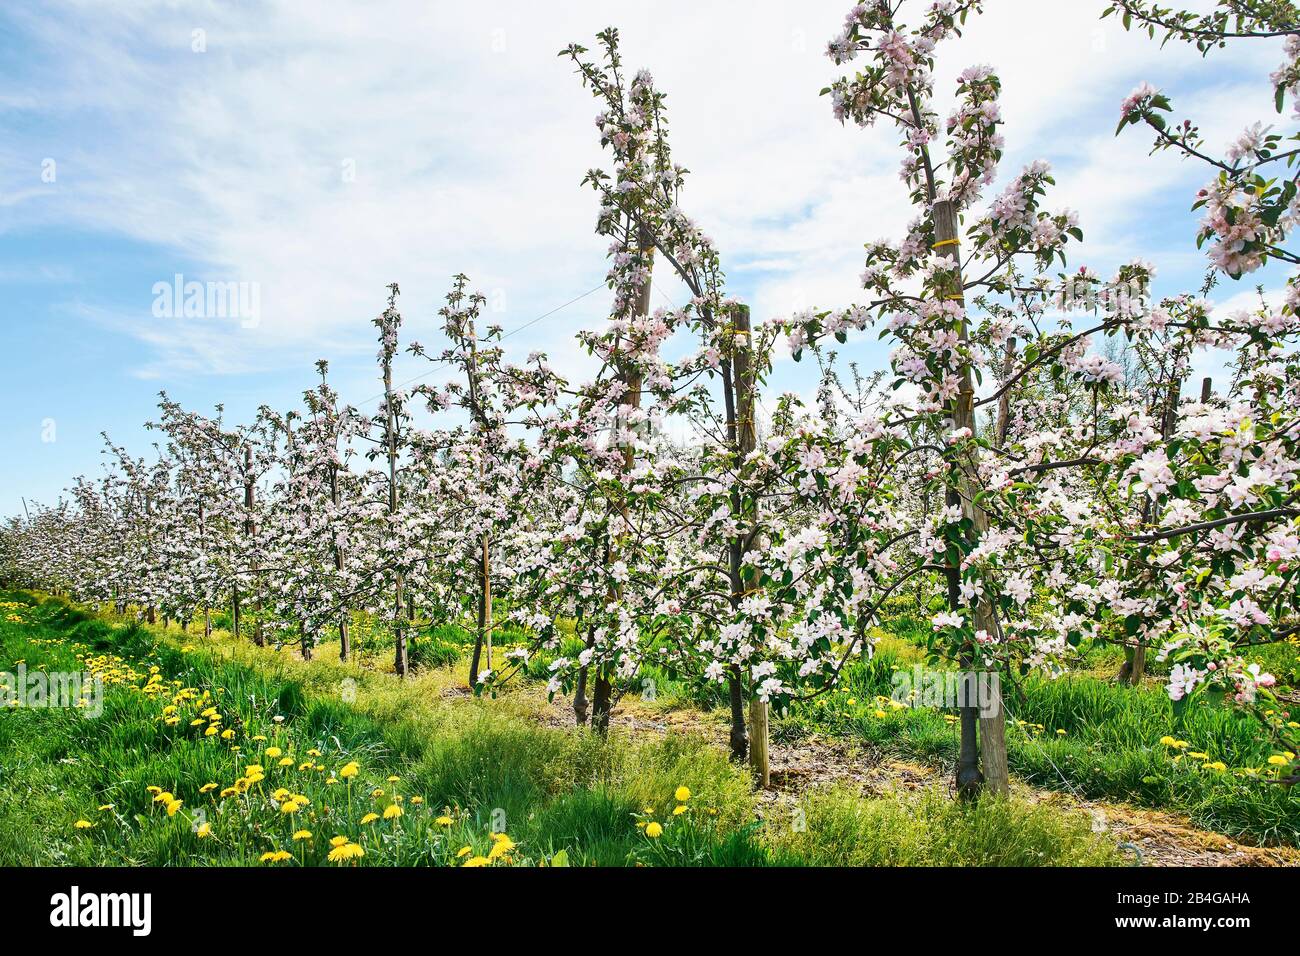 Germania, Bassa Sassonia, Altes Land, Jork, fiori di frutta, melo frutteto con file di meli fioriti Foto Stock